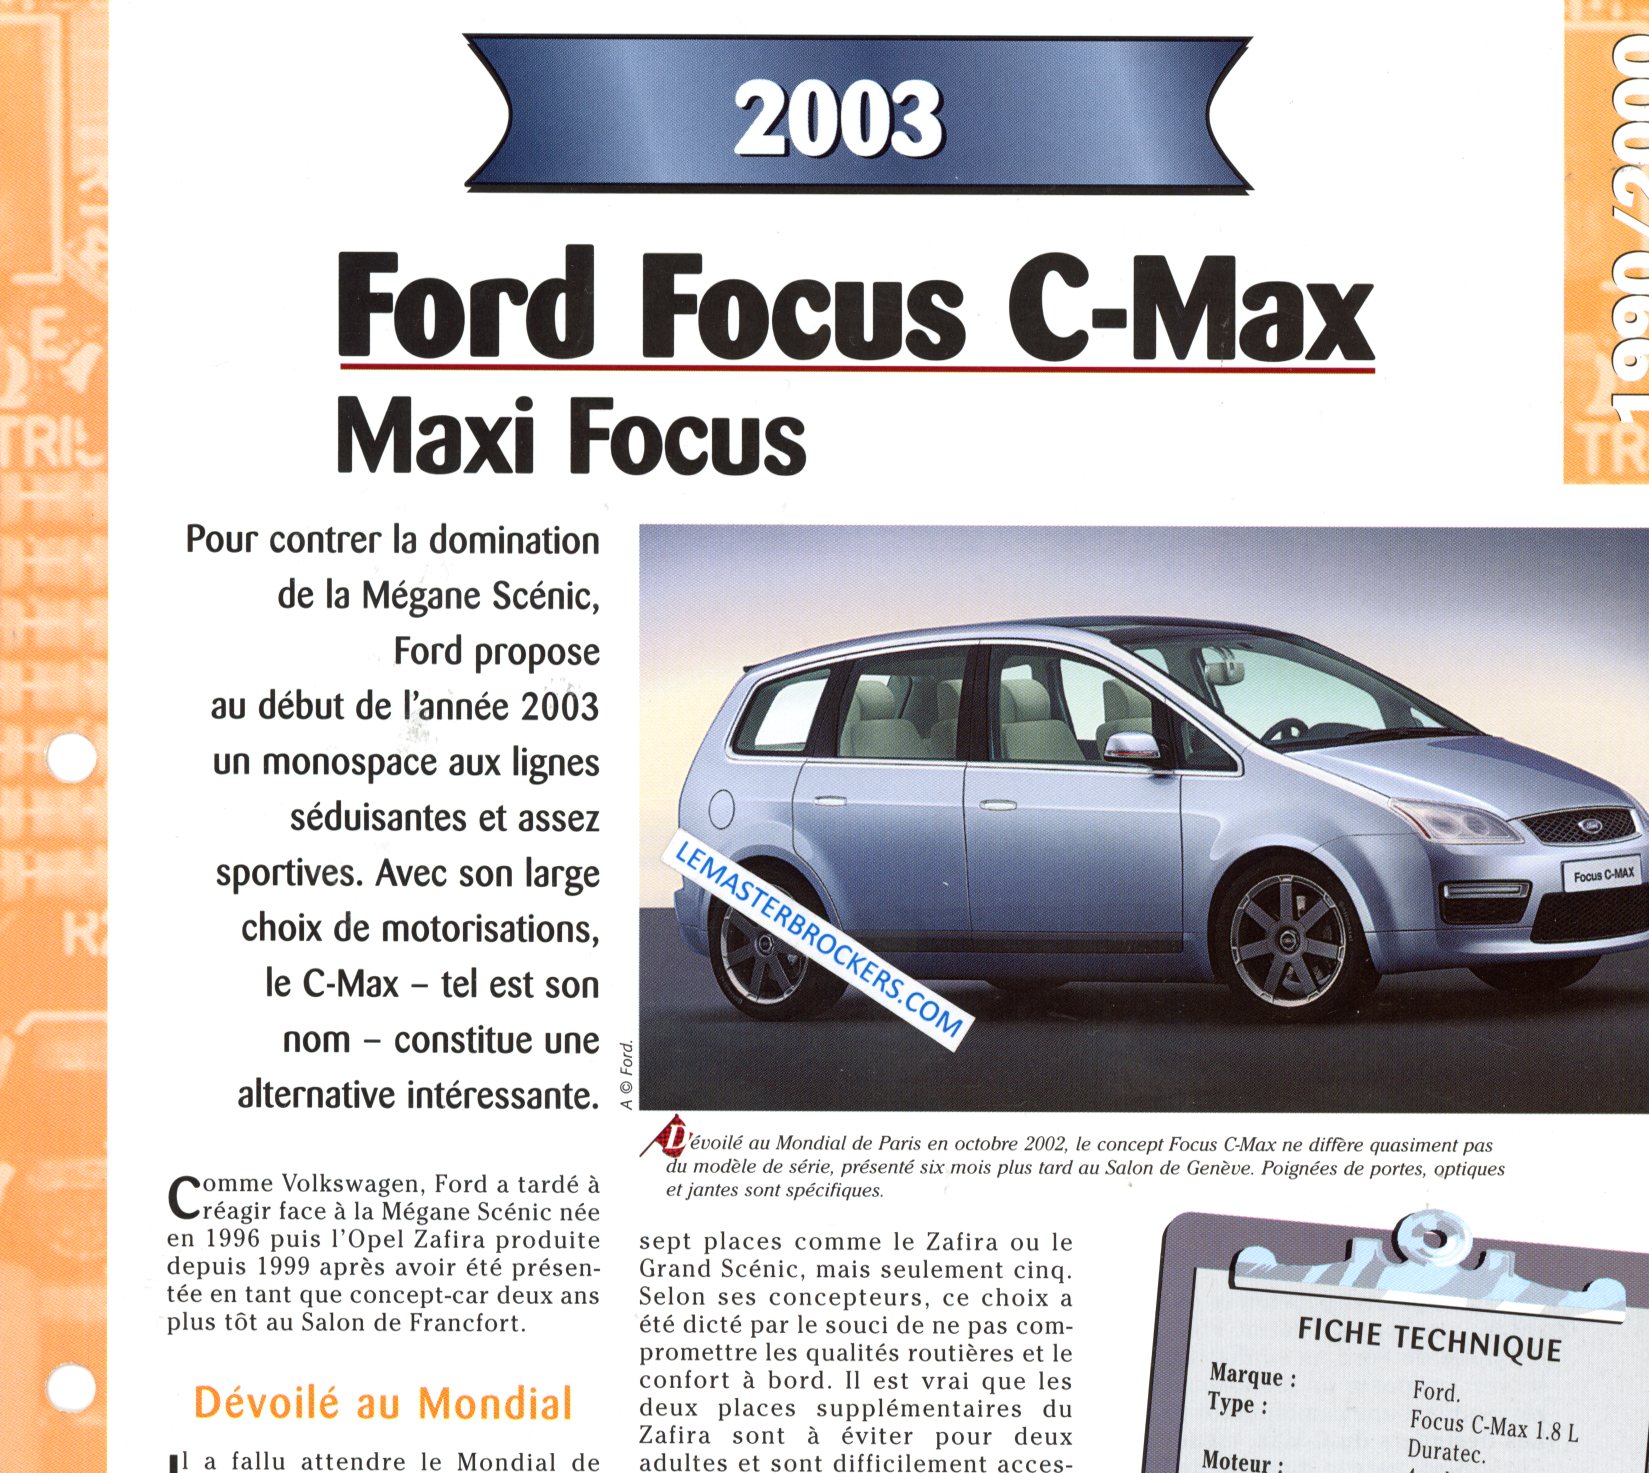 FORD FOCUS C-MAX 2003 FICHE TECHNIQUE